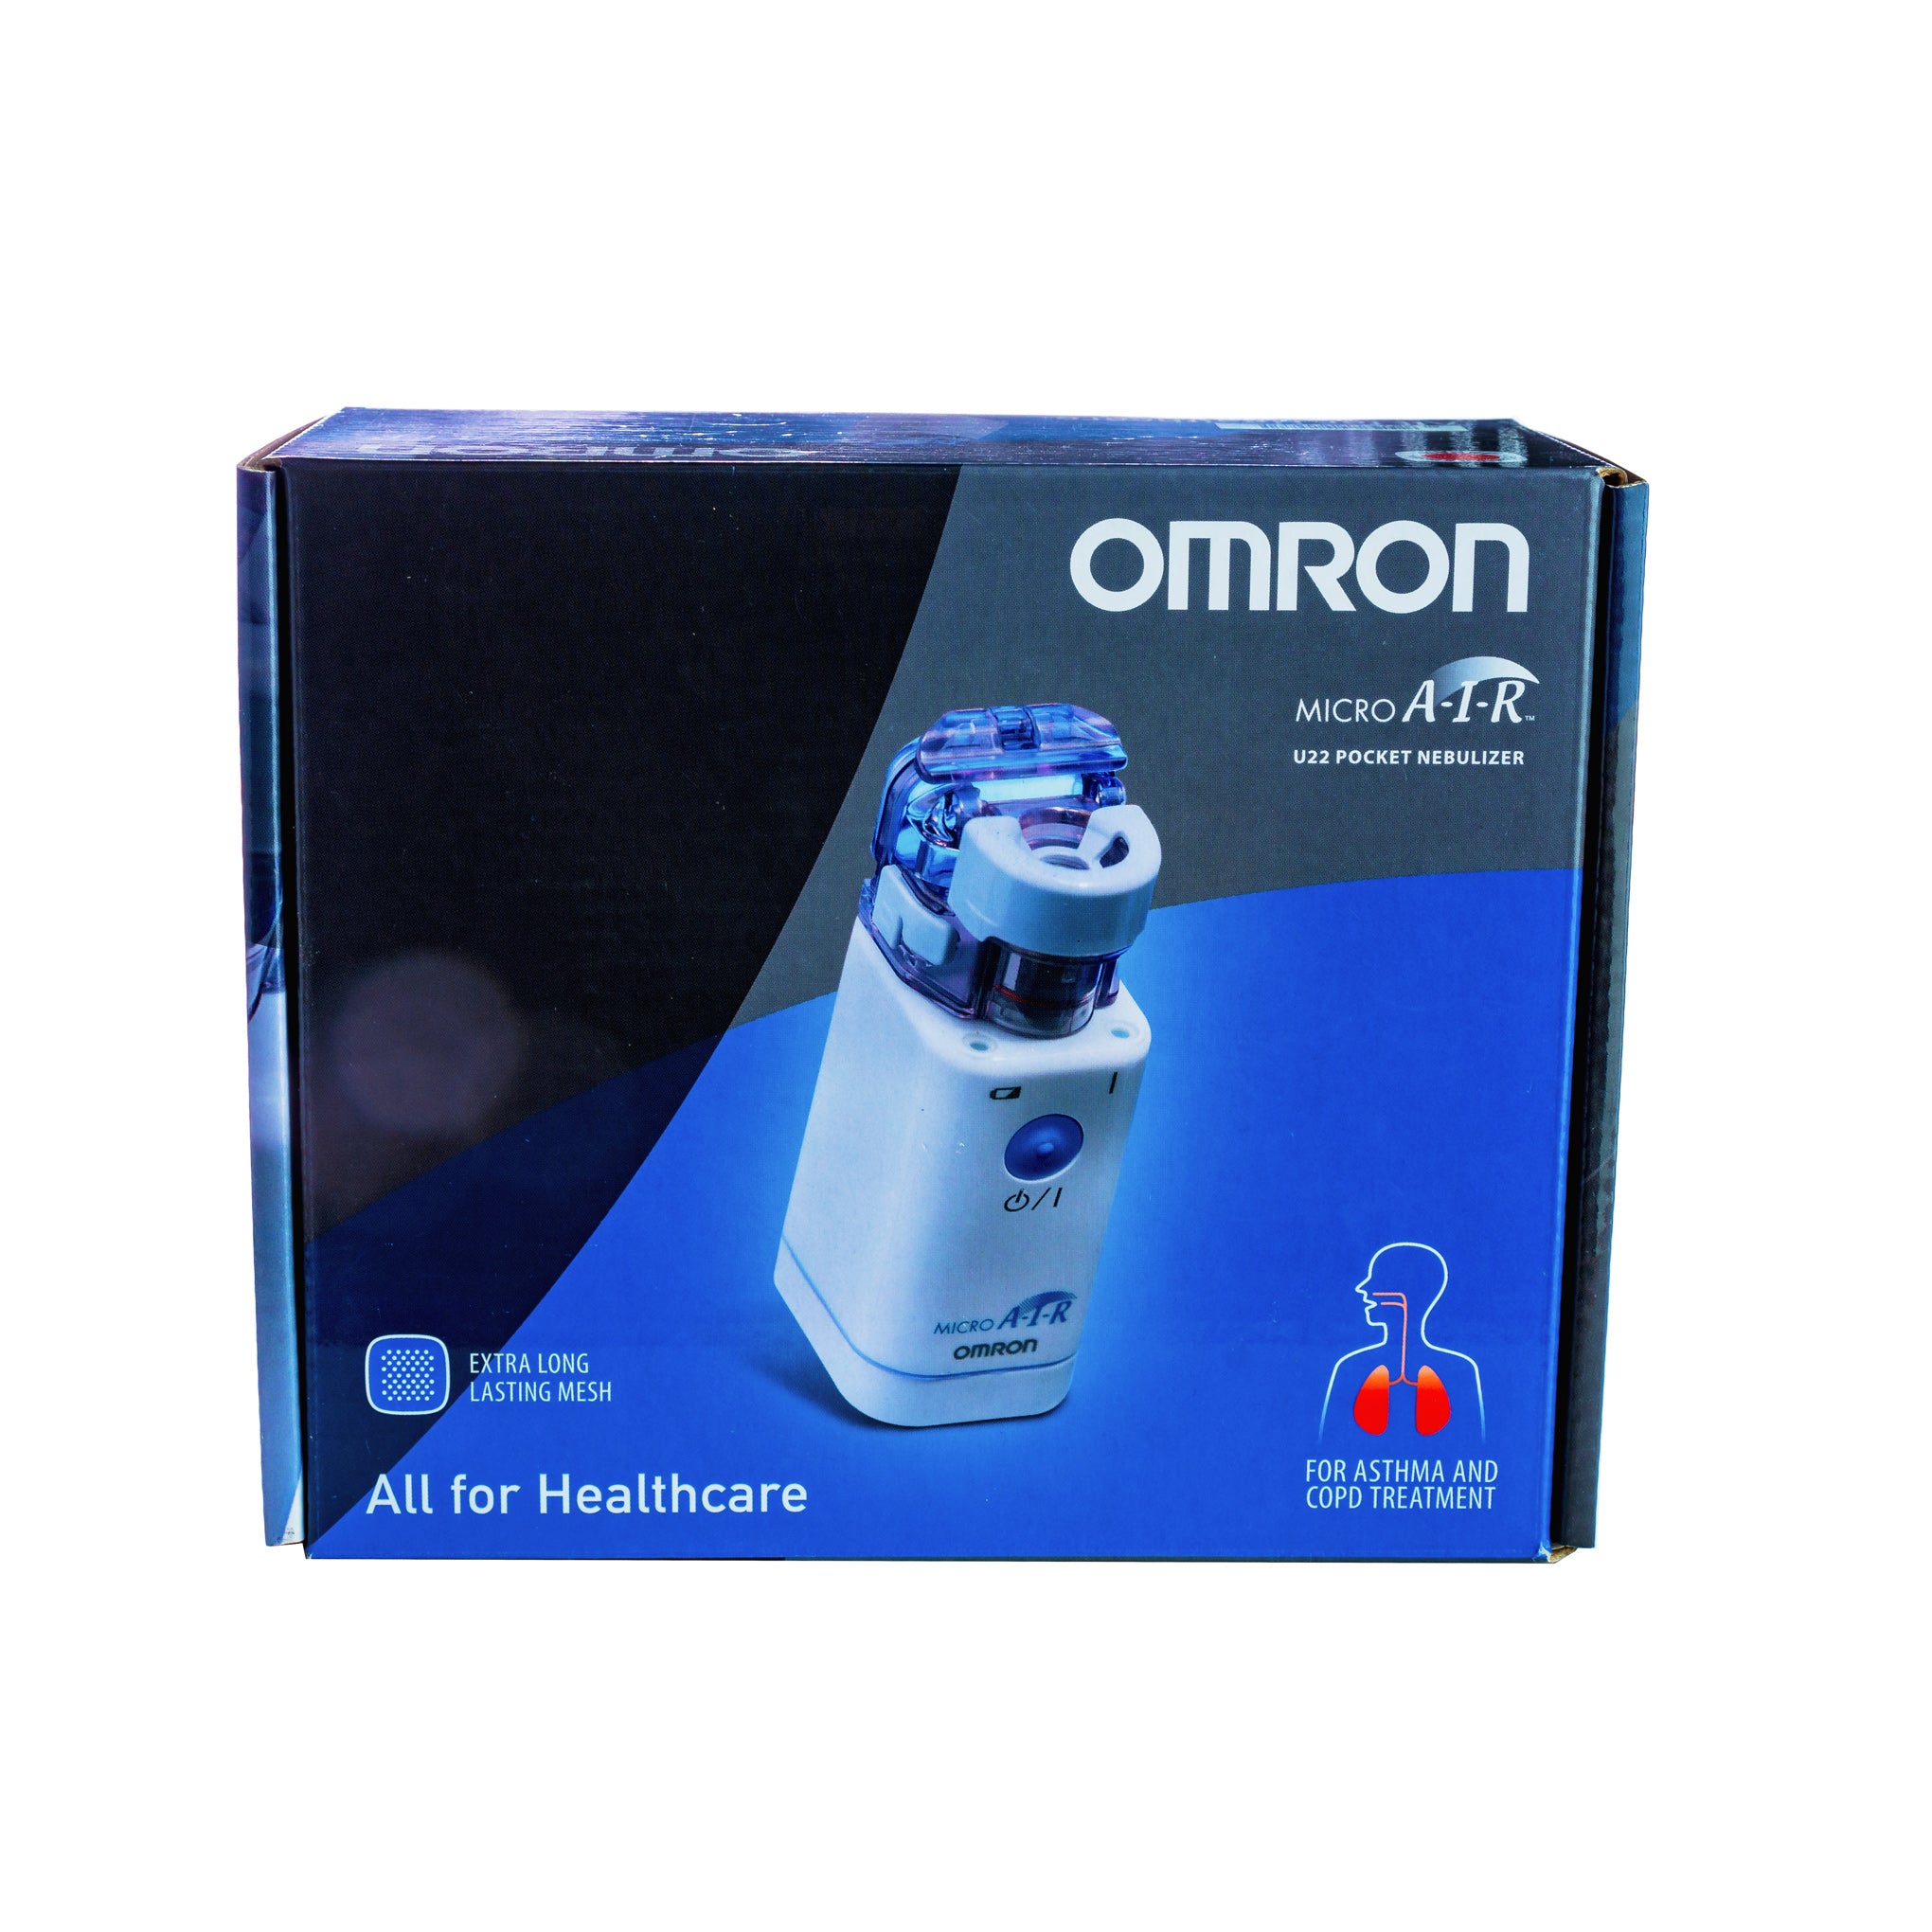 Omron Microair Pocket Nebulizer